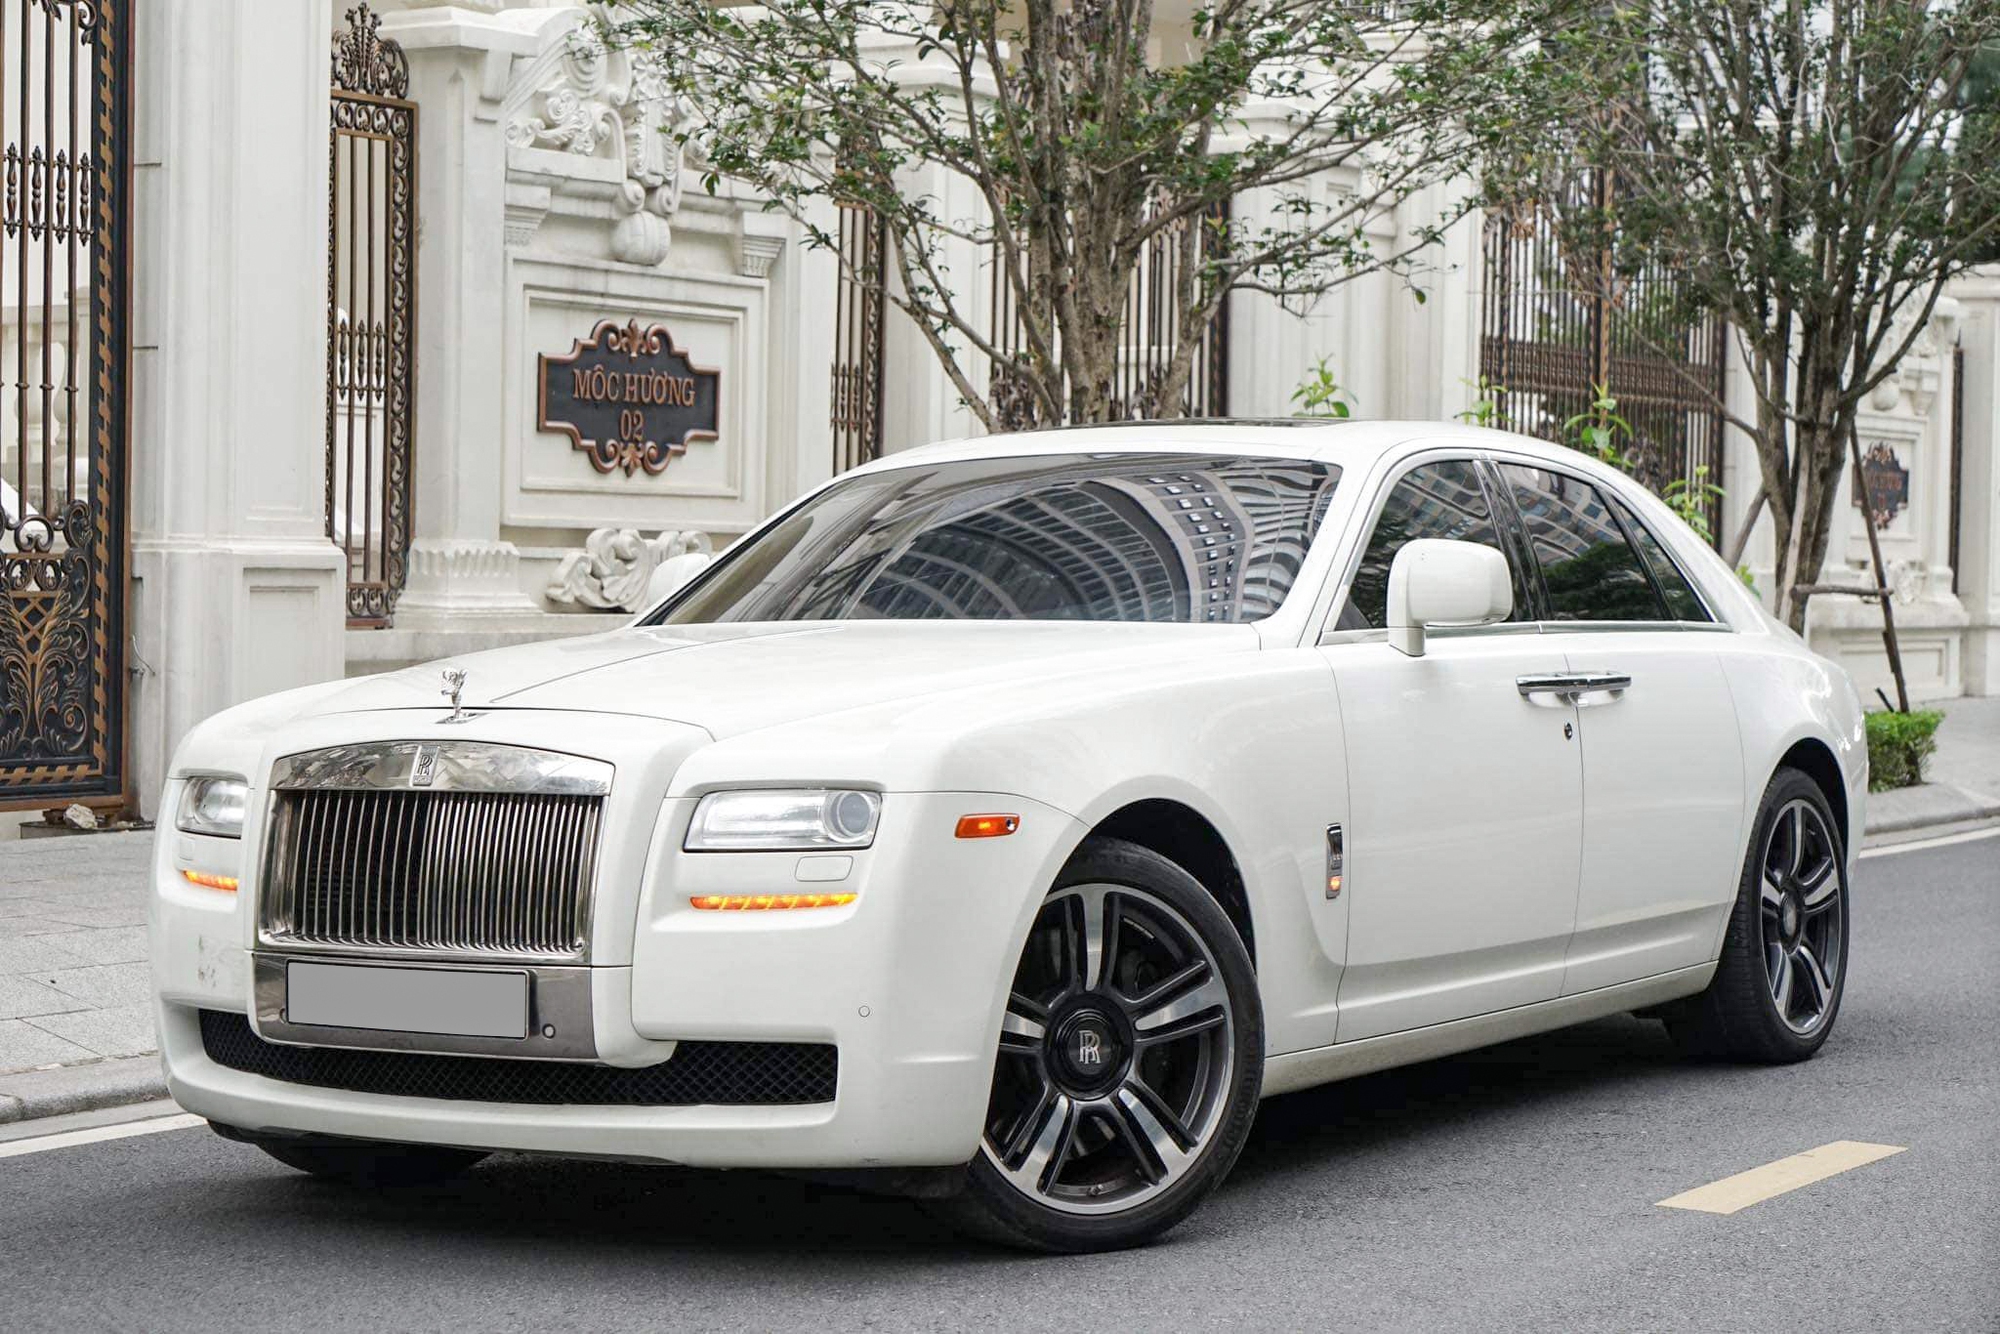 Chỉ cần bỏ ra hơn 5 tỷ đồng, bạn có thể sở hữu chiếc Rolls-Royce Ghost này - Ảnh 1.